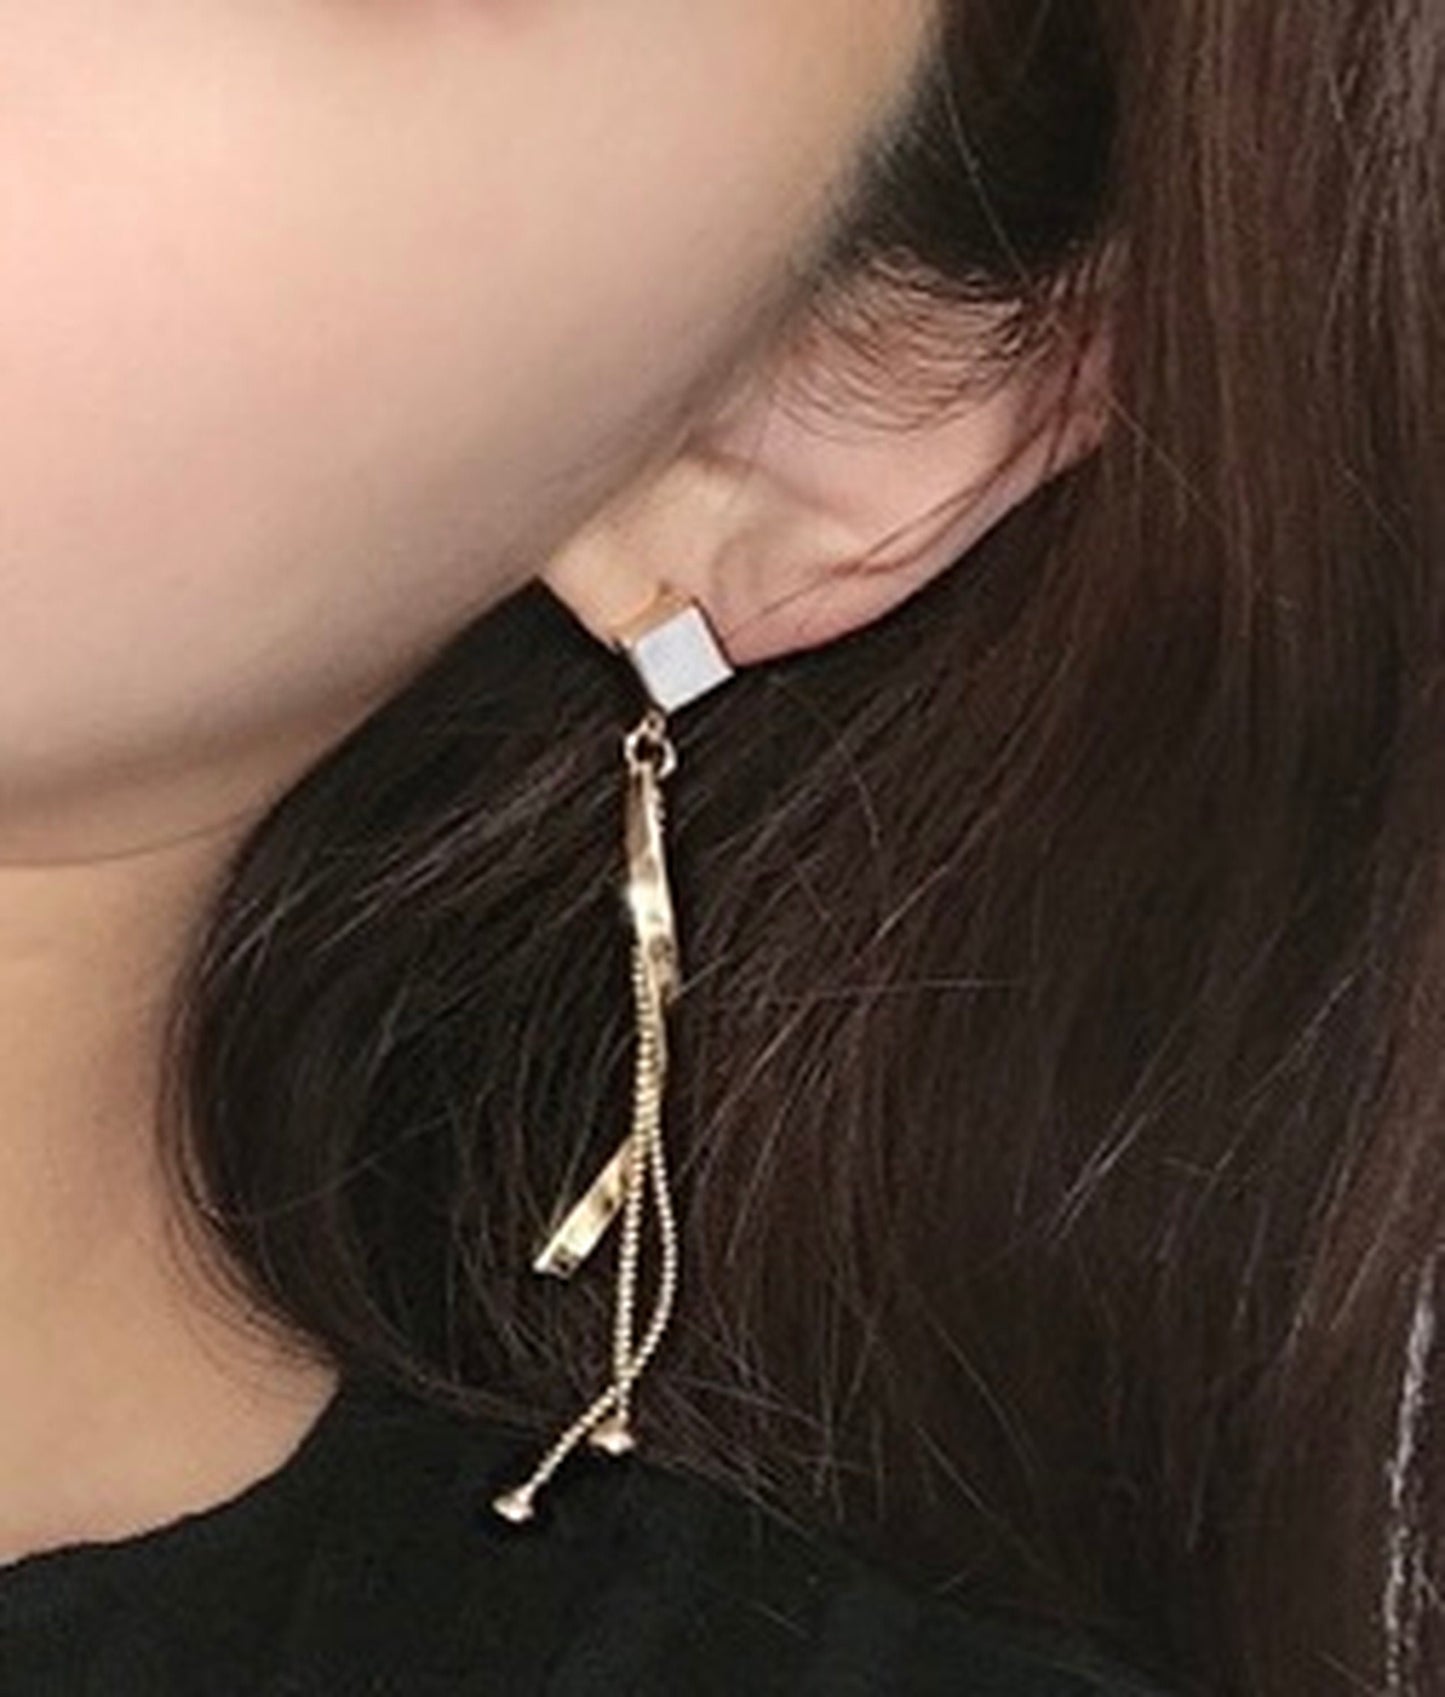 Spiral Dangle earrings, Geometrical Earrings, Gold Corkscrew Earrings, Long Fringed Drop, Wave Earrings, White Enamel Earrings, Minimalist